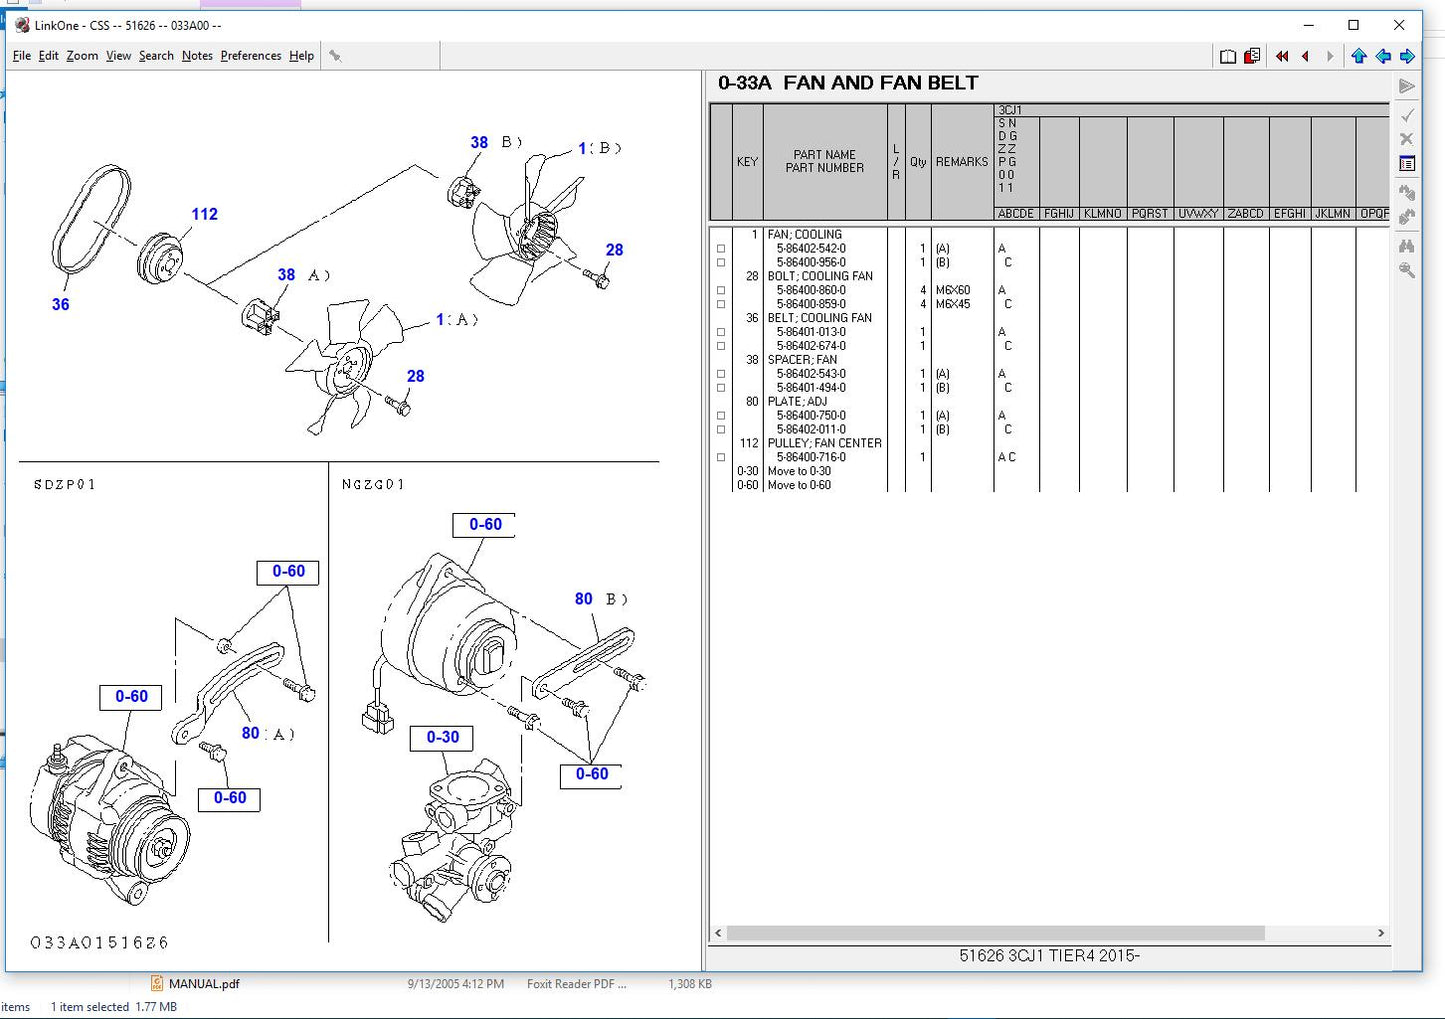 
                  
                    Isuzu CSS-NET Camiones y Motores Industriales EPC 2020- todos los modelos y s \ n manuales de piezas
                  
                